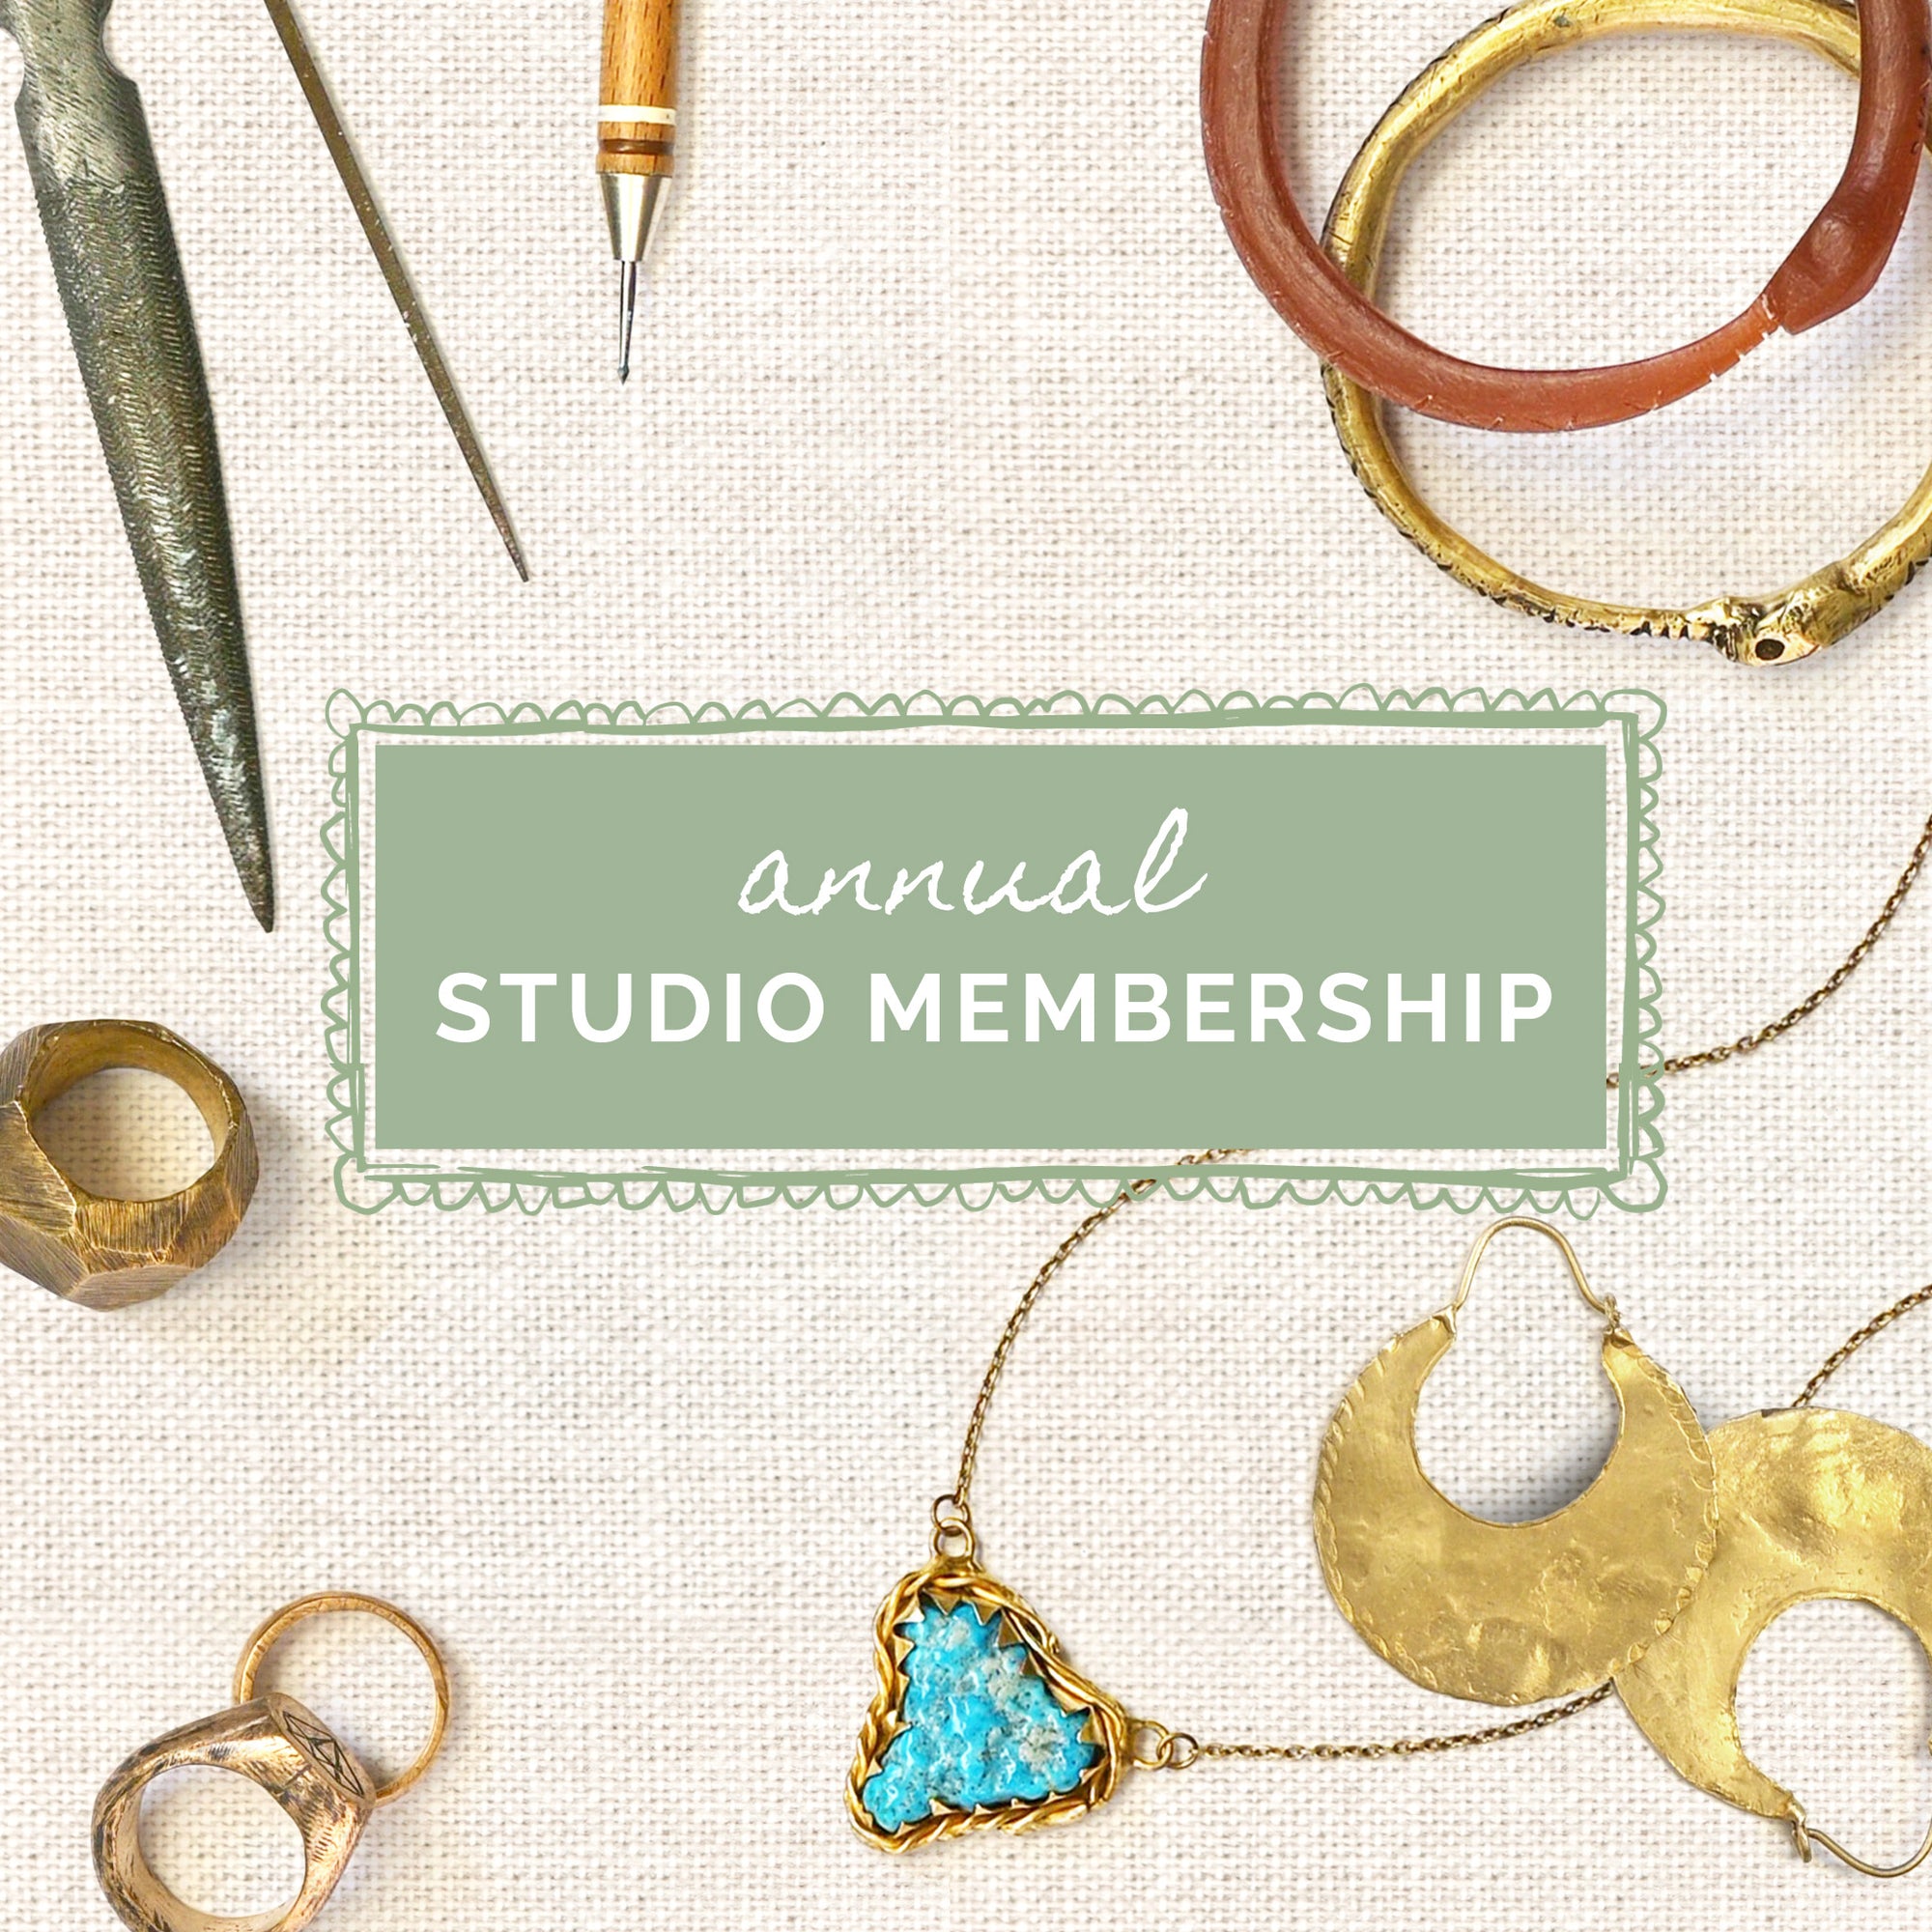 Annual Studio Membership